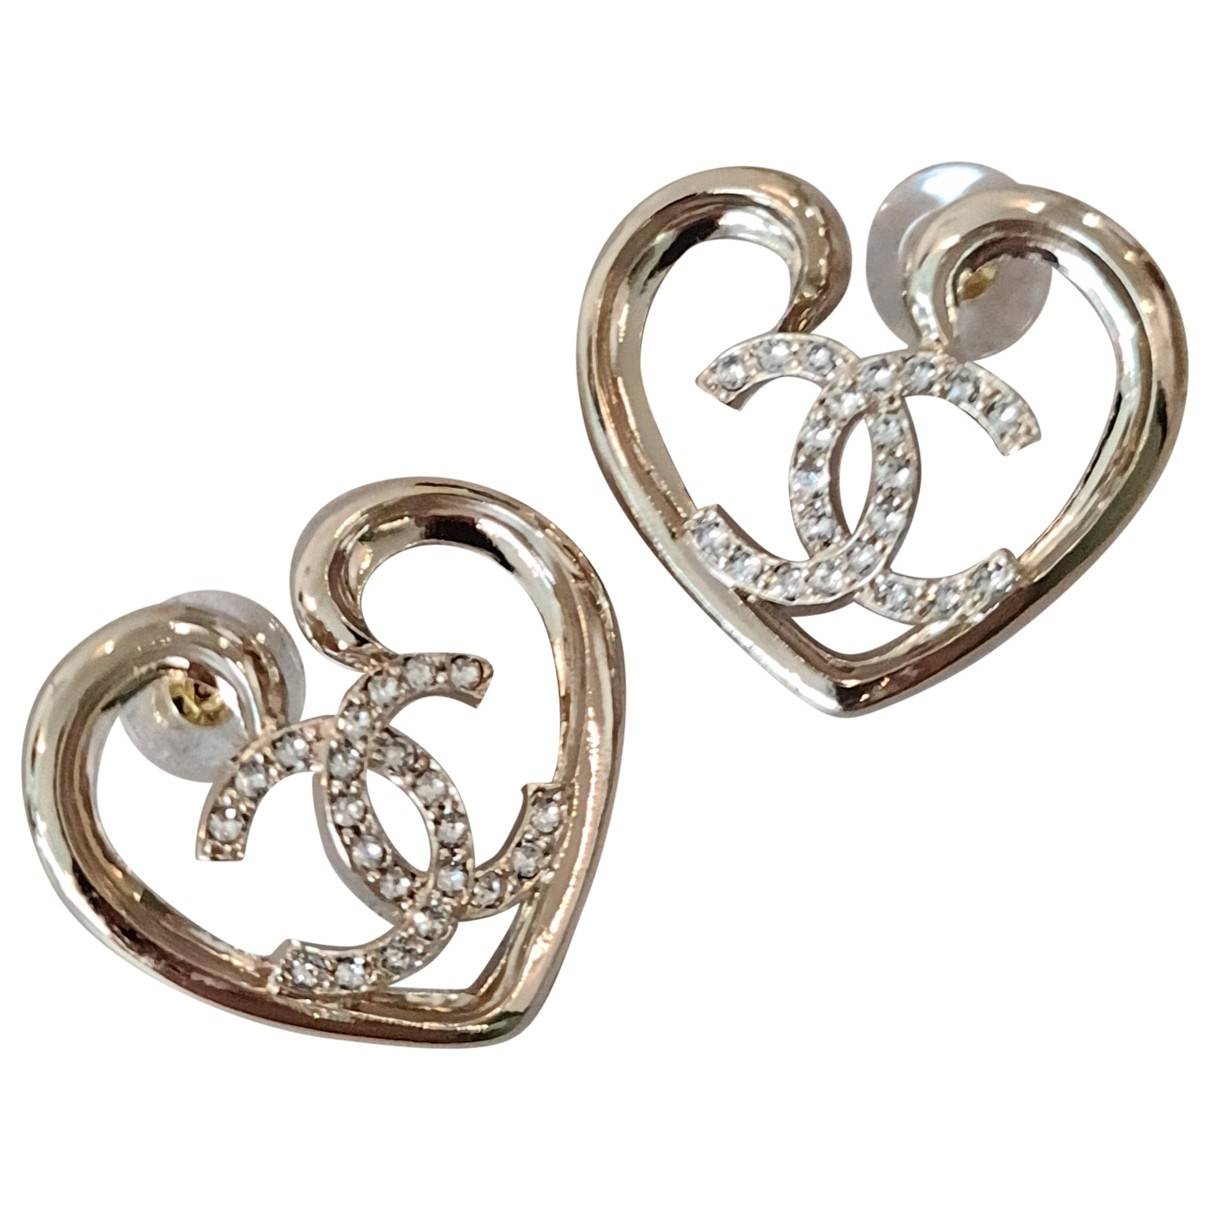 Cc earrings Chanel Gold in Metal - 39002084